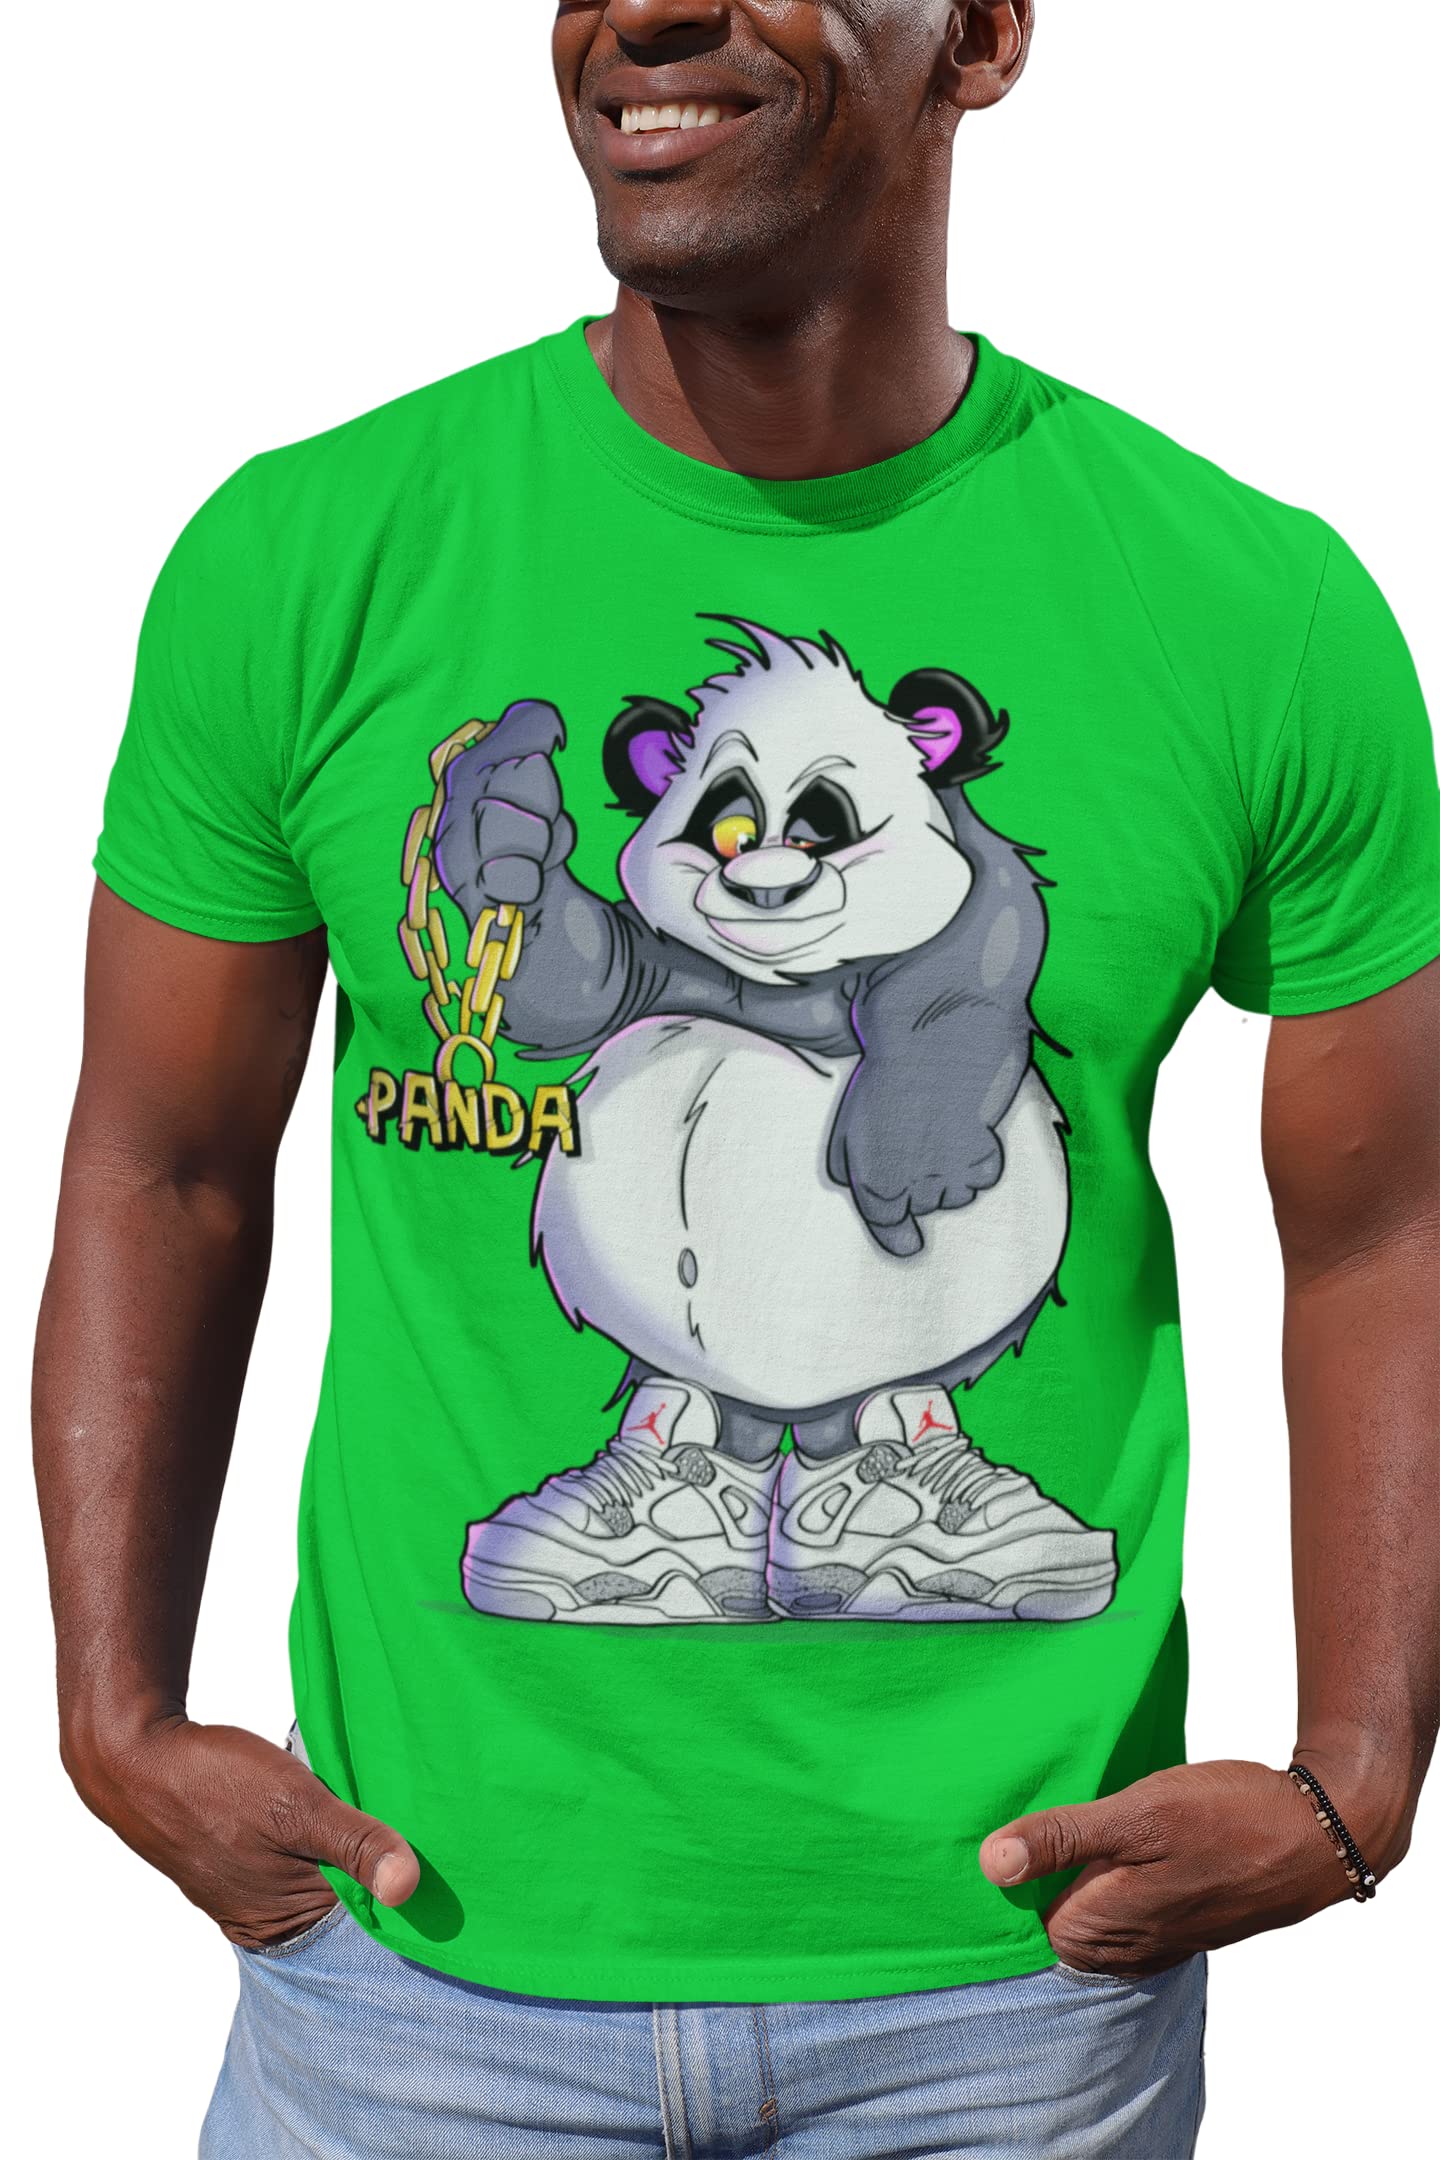 Jordan 4 OREO Panda Chain Shirt to Match Sneakers Men's Tee, T-Shirt to Match Jordan 4s Hip-Hop Streetwear T-Shirt Green